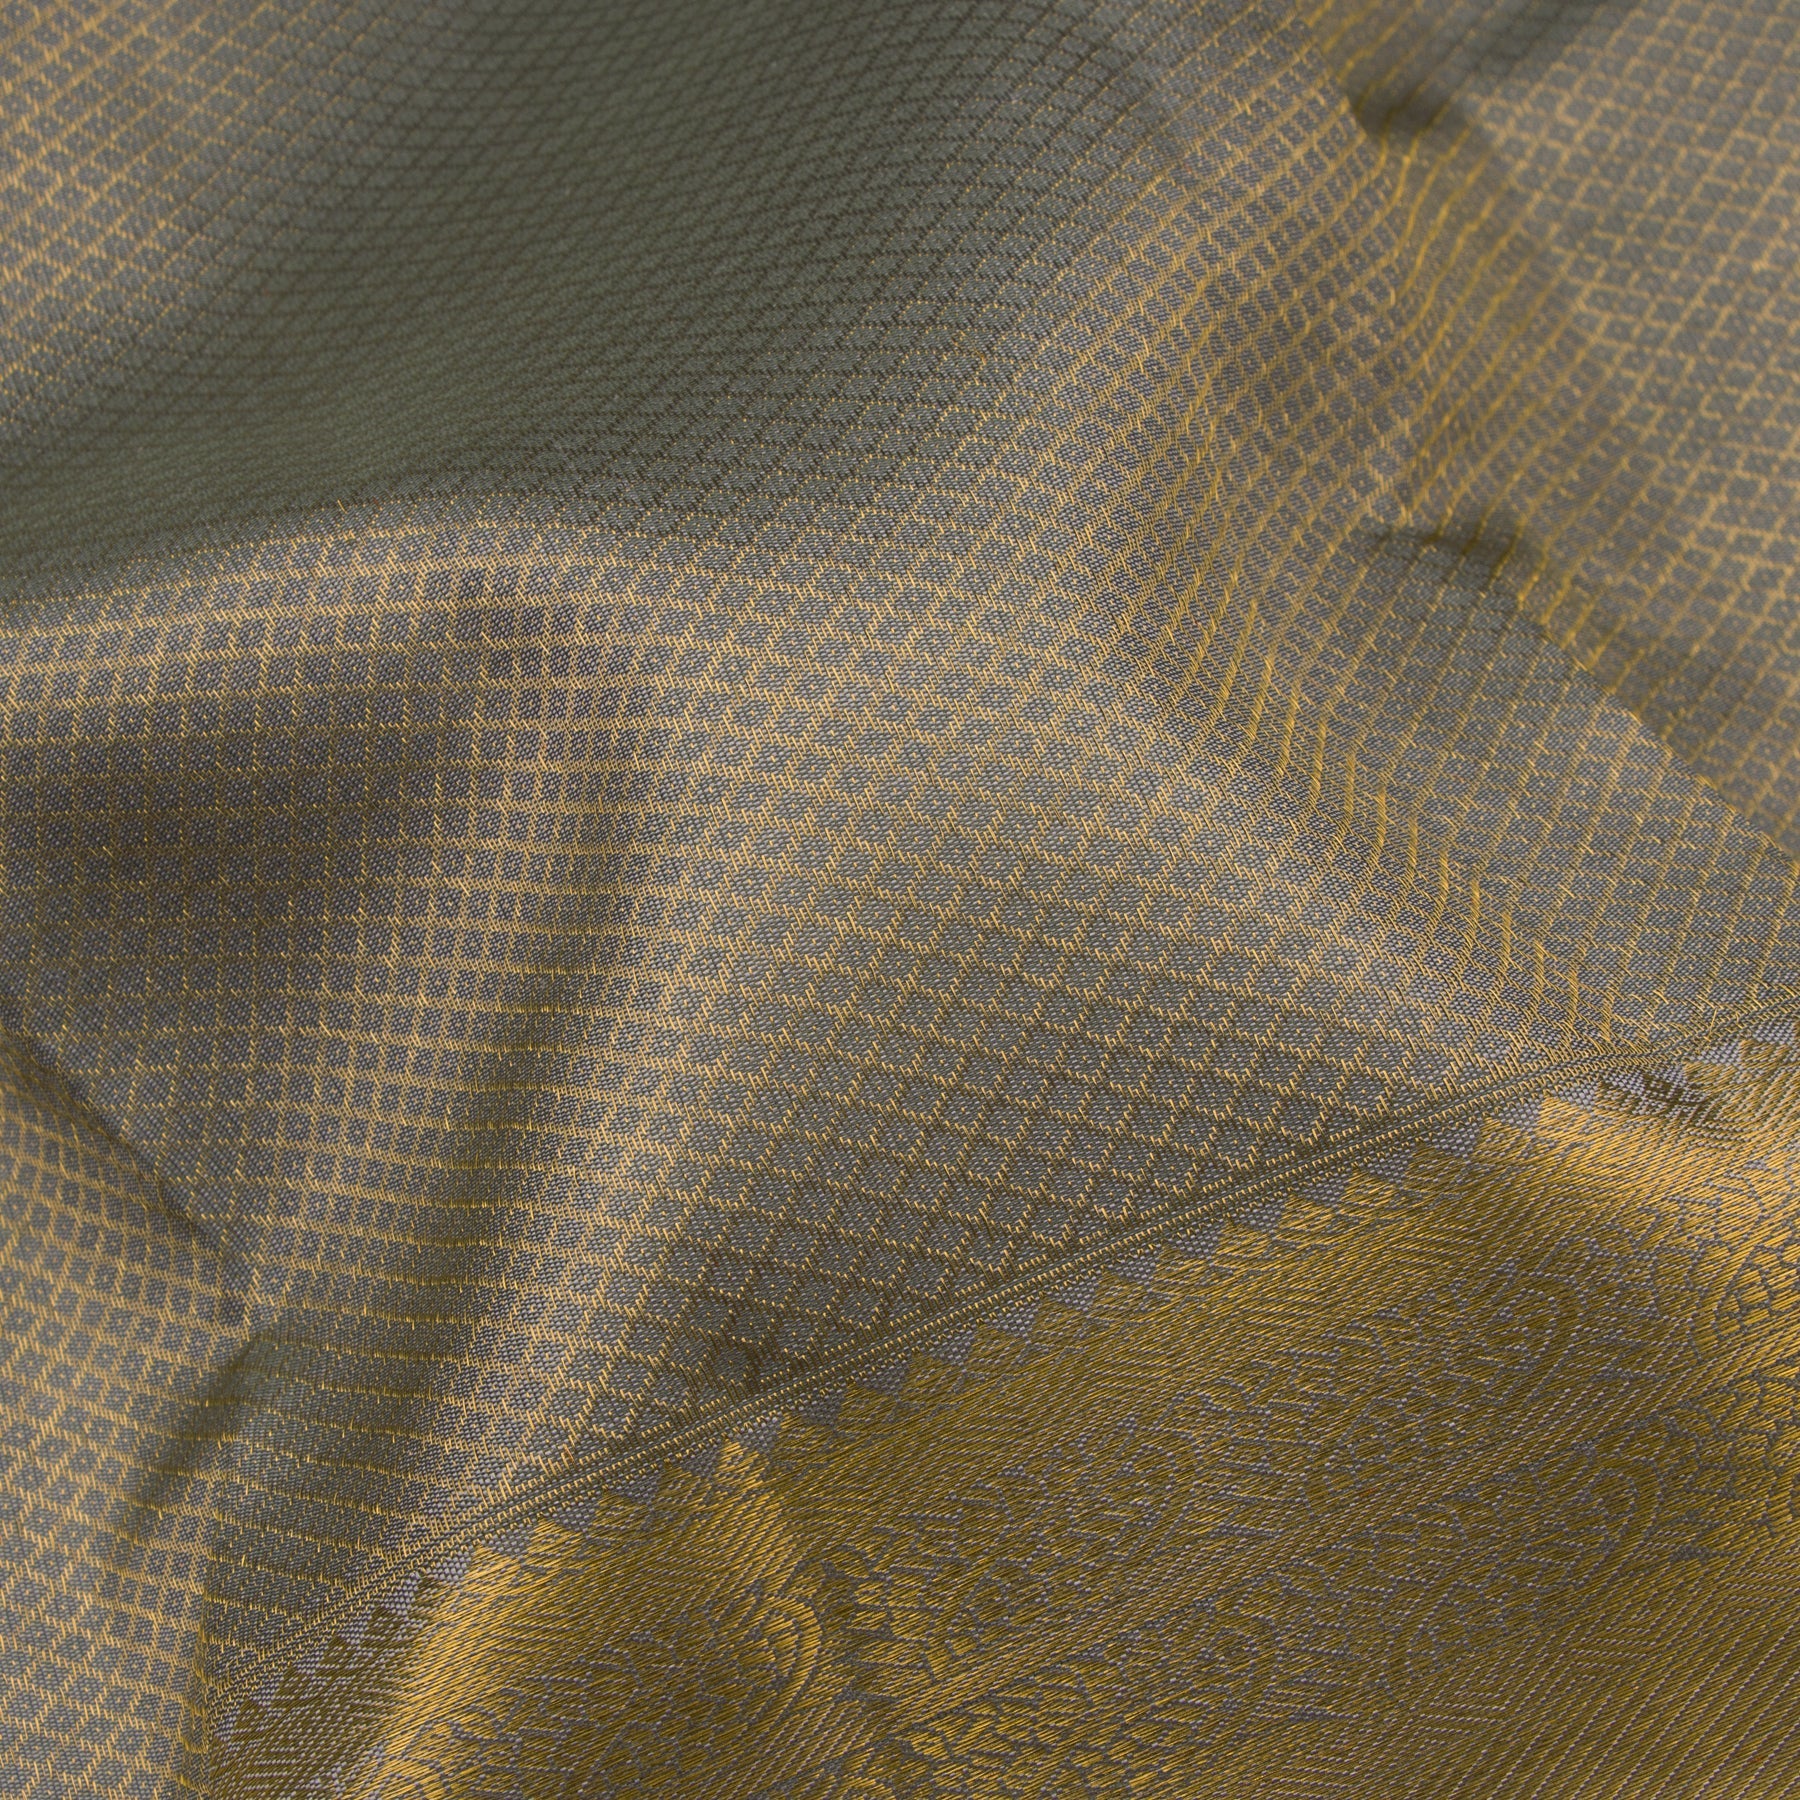 Kanakavalli Kanjivaram Silk Sari 23-110-HS001-02959 - Fabric View